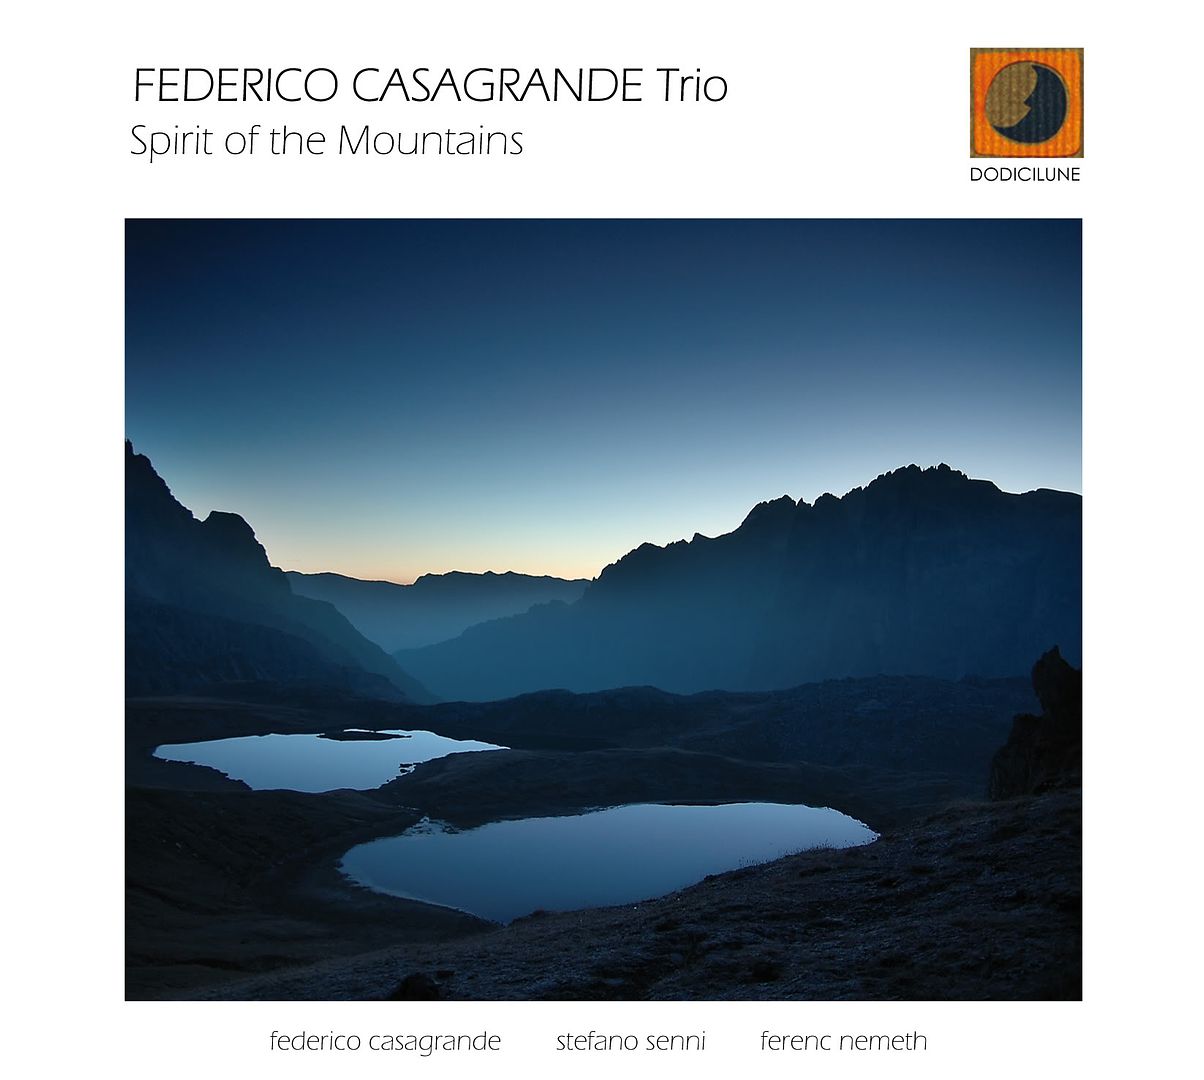 Federico Casagrande Trio: Spirit of the Mountains